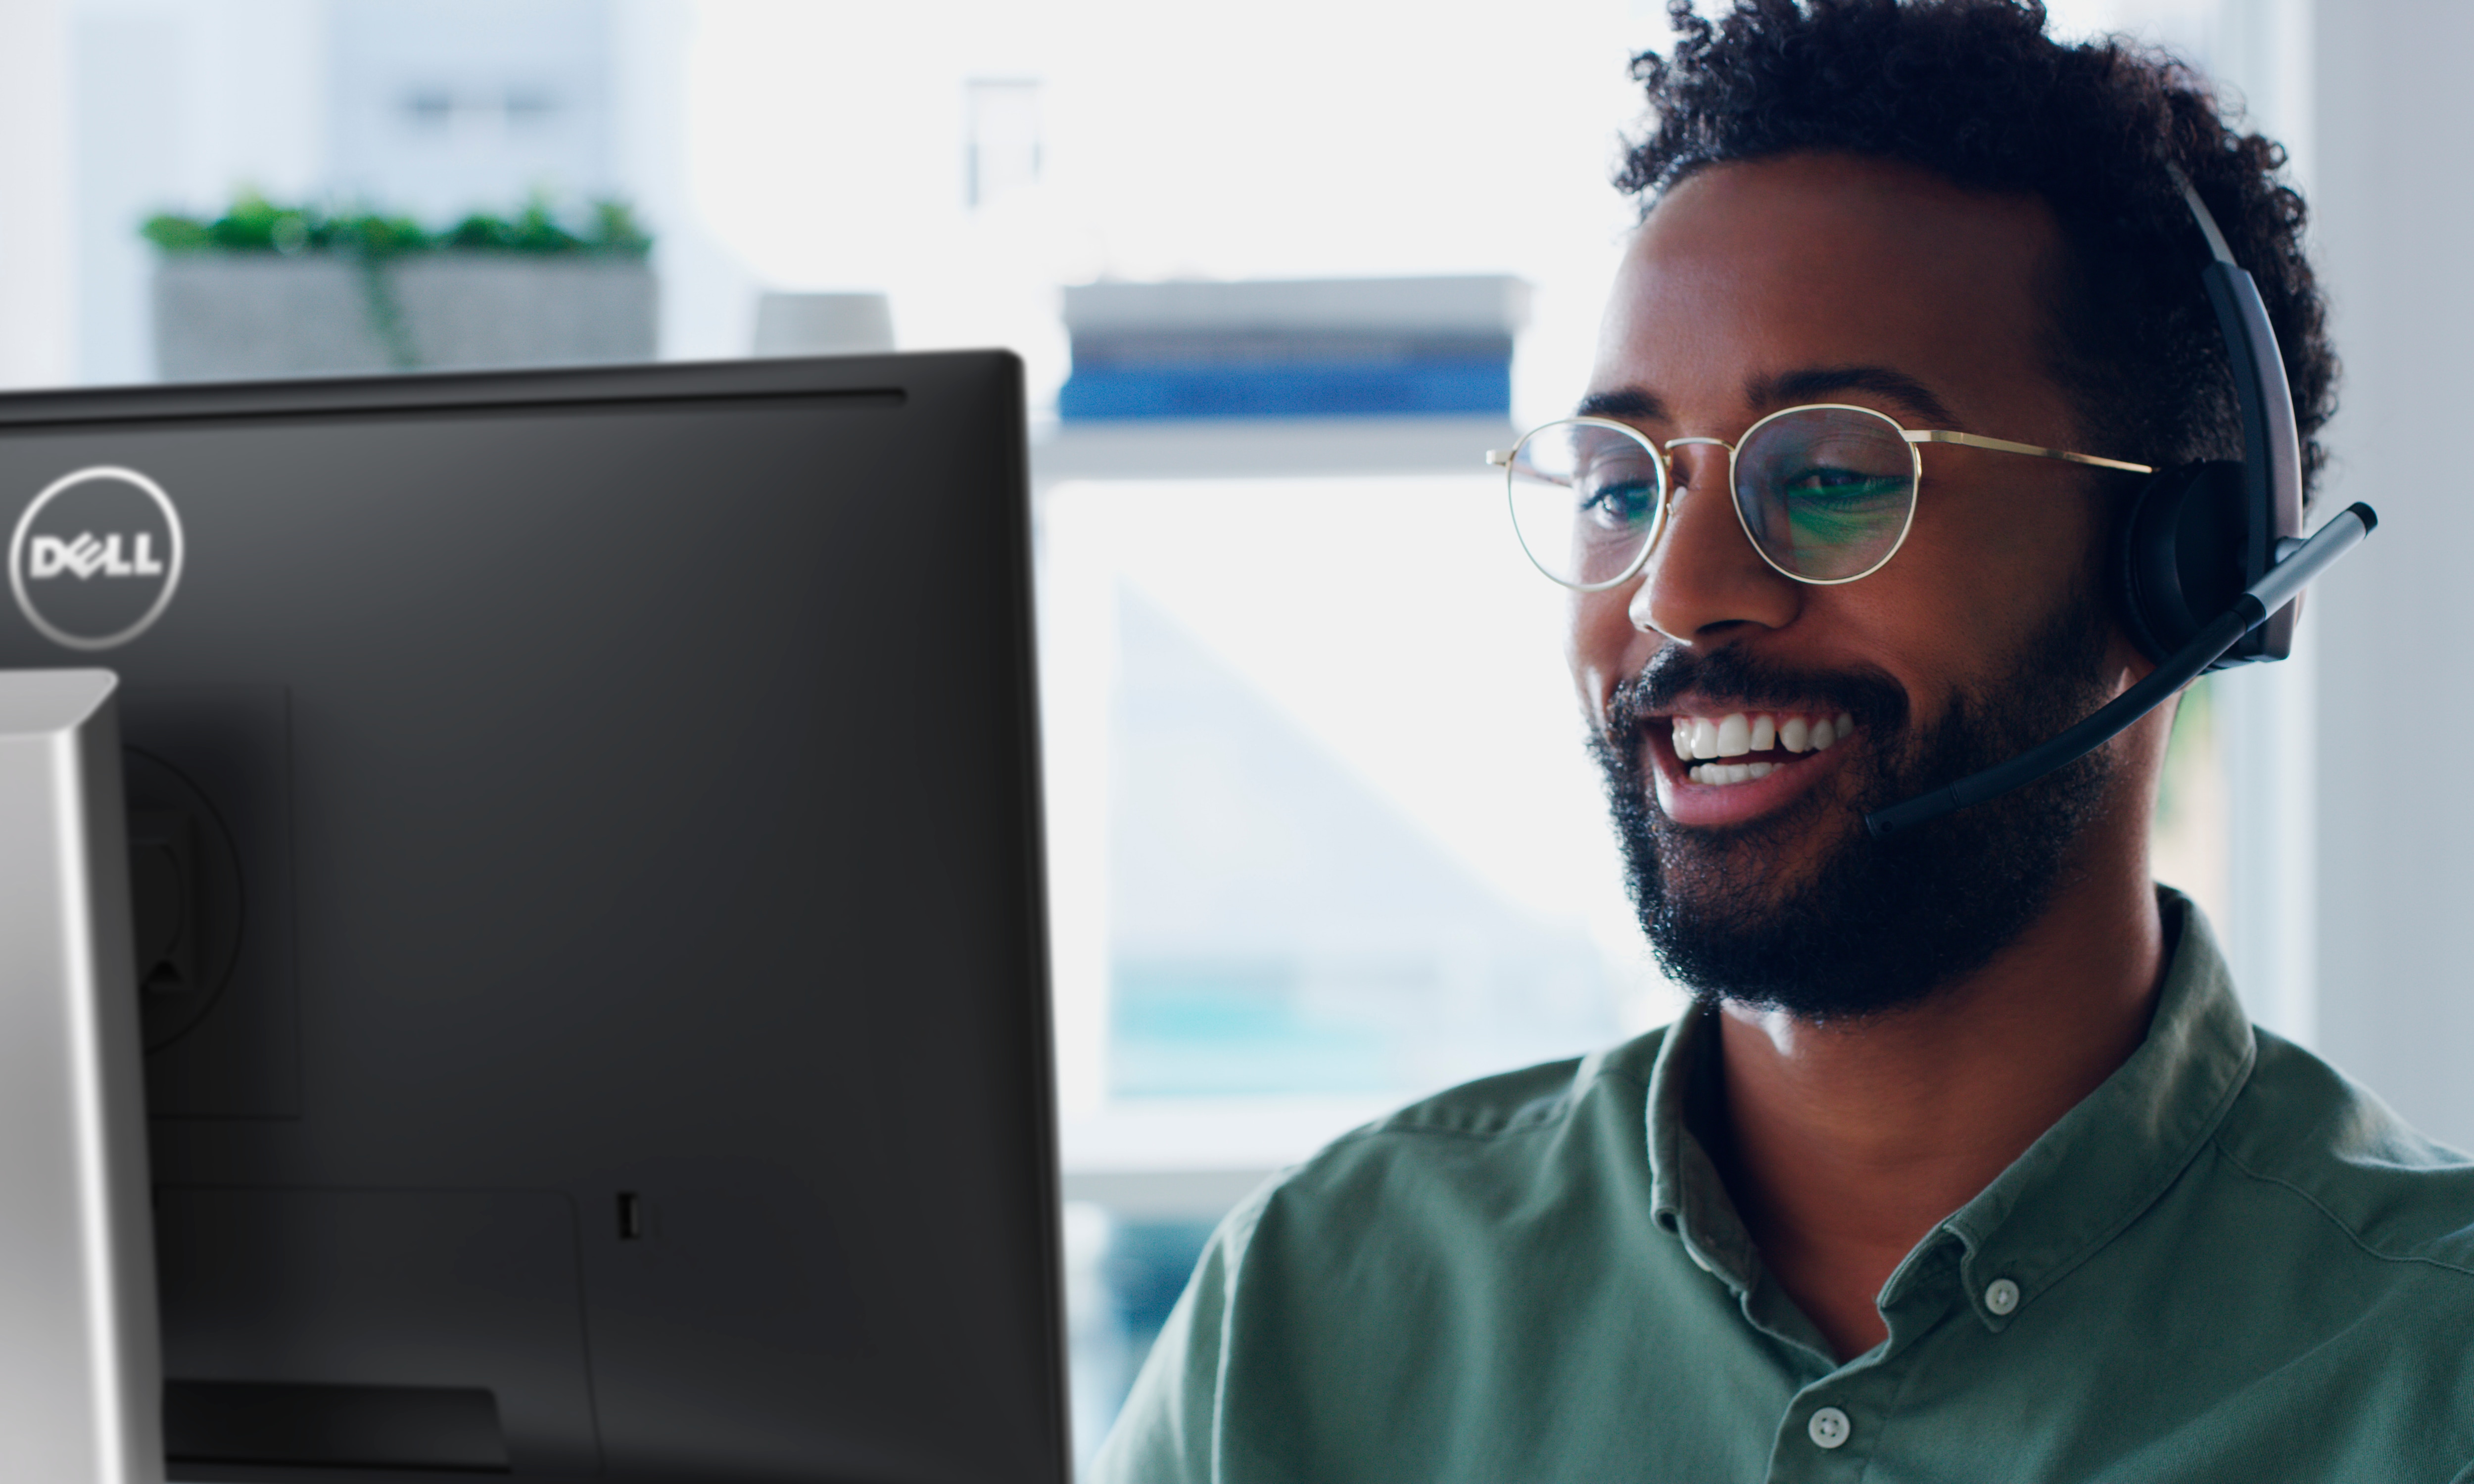 Homme souriant portant des lunettes qui utilise un écran Dell avec un casque sur la tête.